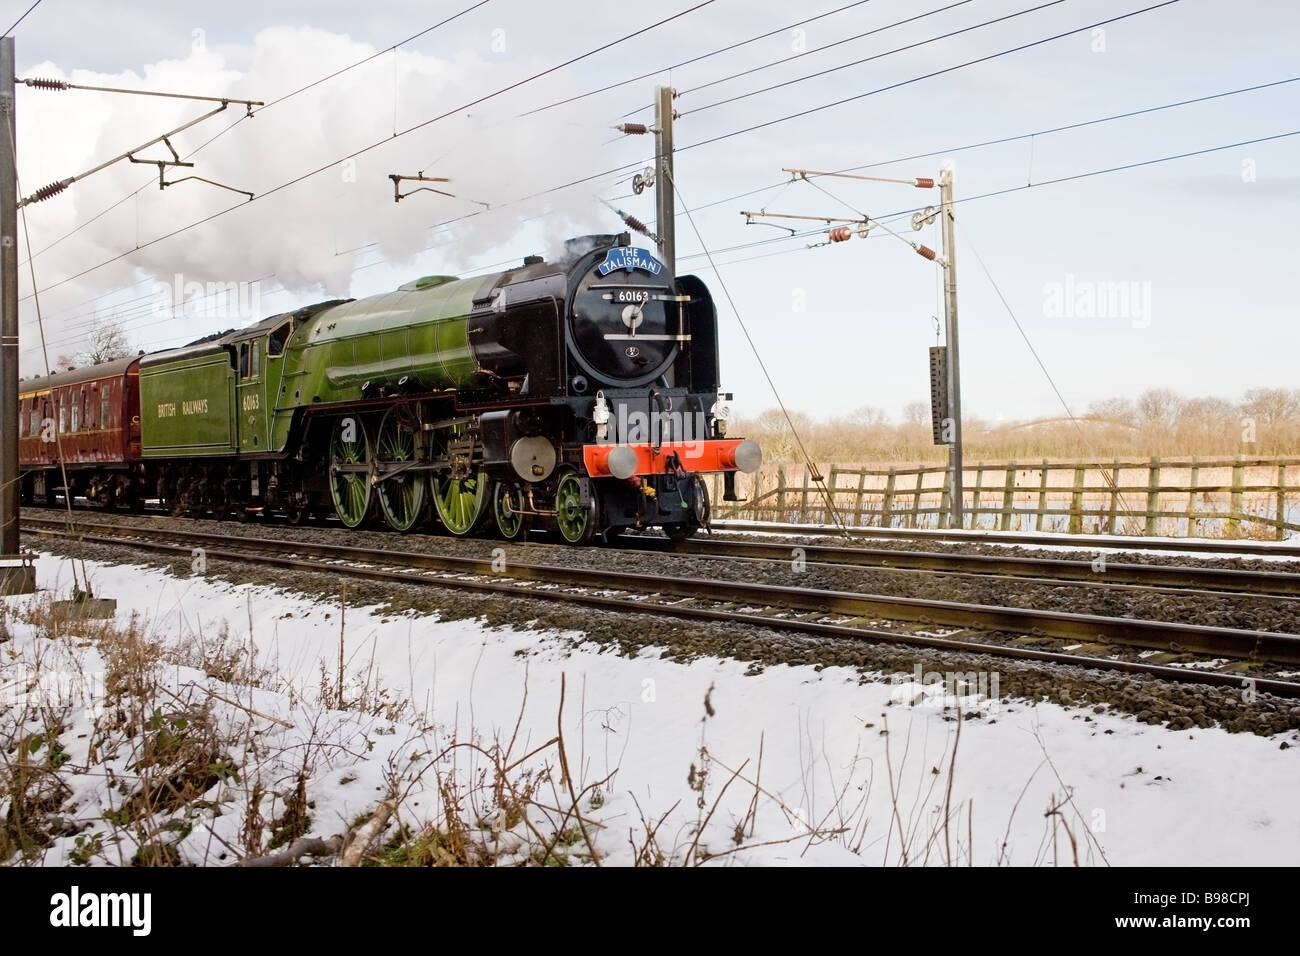 Britische Eisenbahnen Klasse A1 60163 "Tornado" Dampf Lok Pasing durch Potteric Carr Natur Reseve mit Schnee auf Schienen Stockfoto